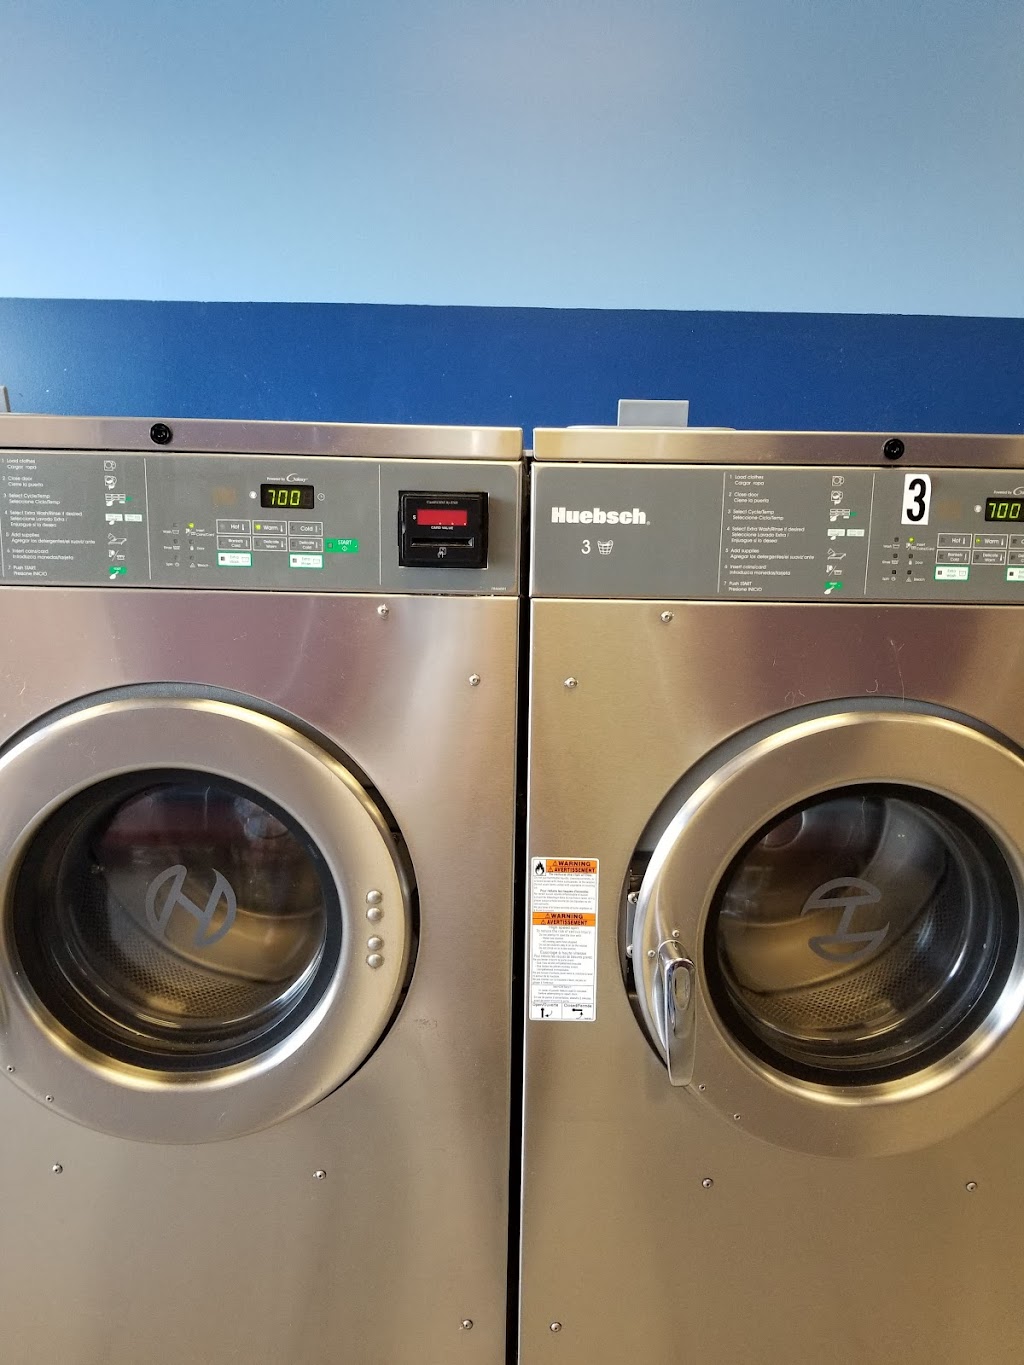 Precision Wash & Dry Laundry | 290 White St, Danbury, CT 06810 | Phone: (203) 791-0278